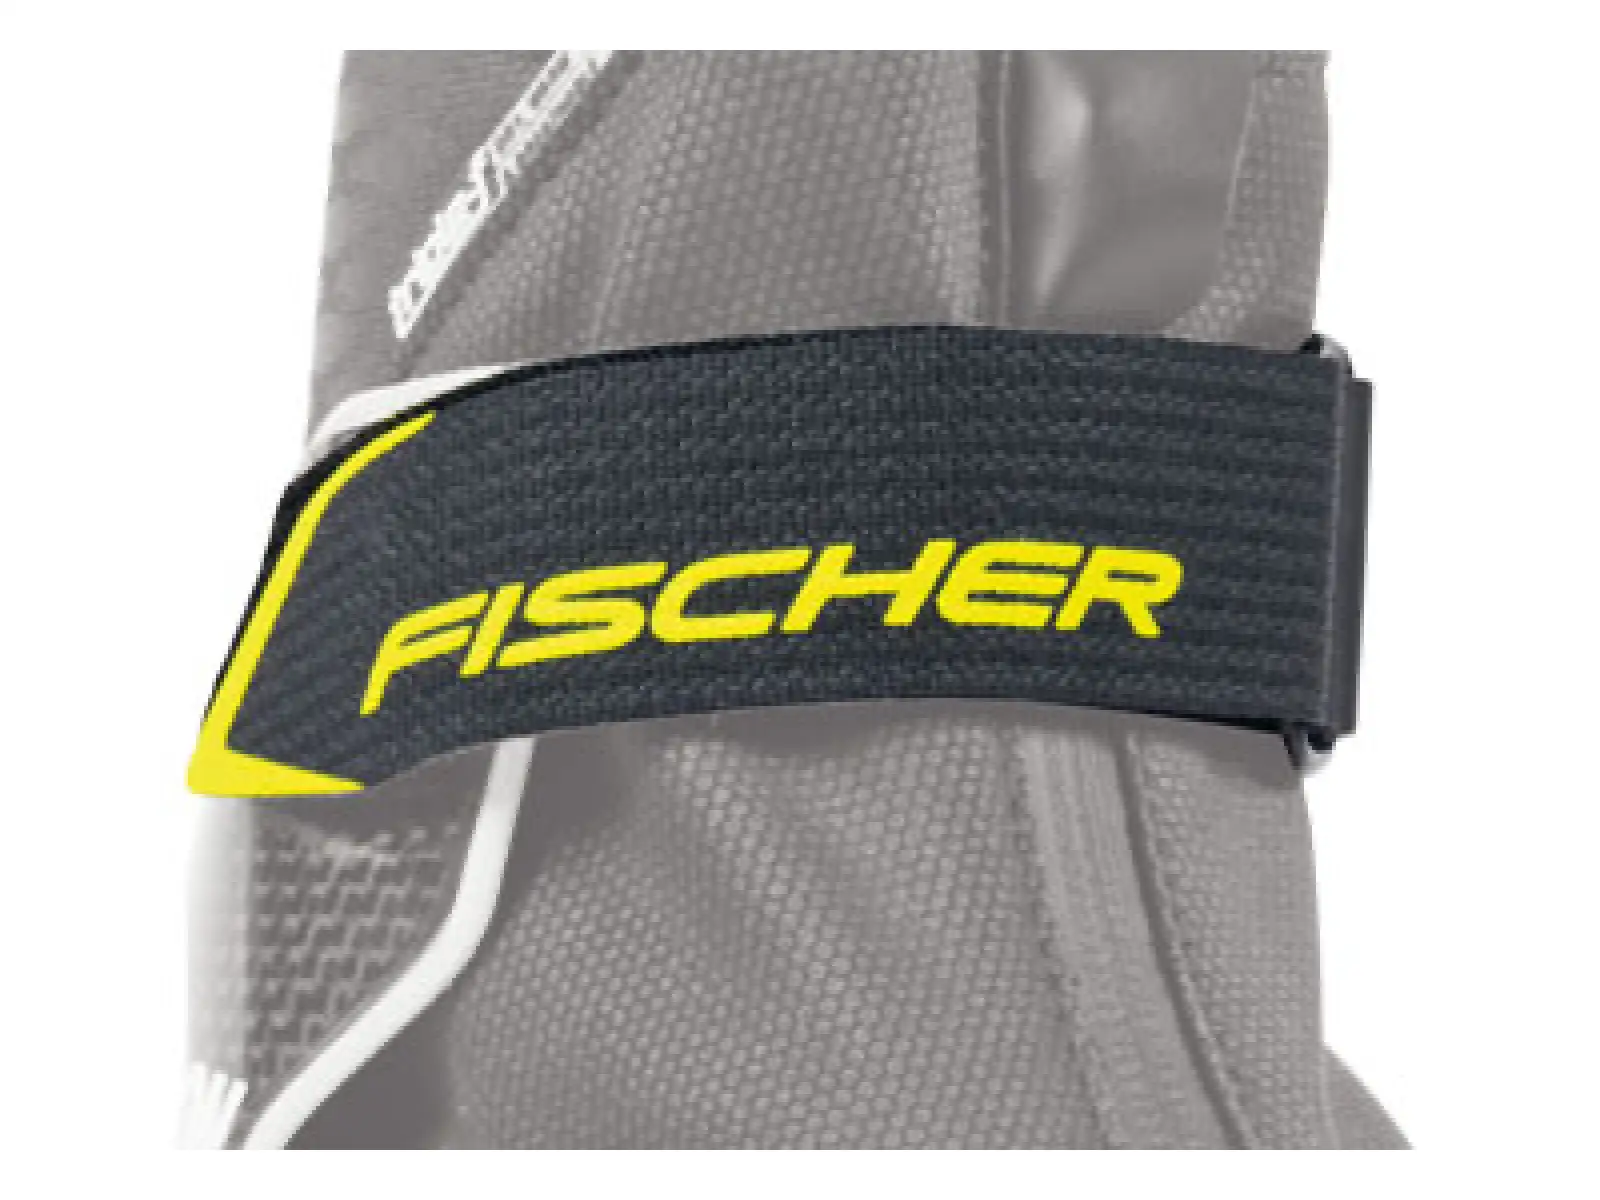 Fischer RC3 COMBI boty na běžky 2021/22